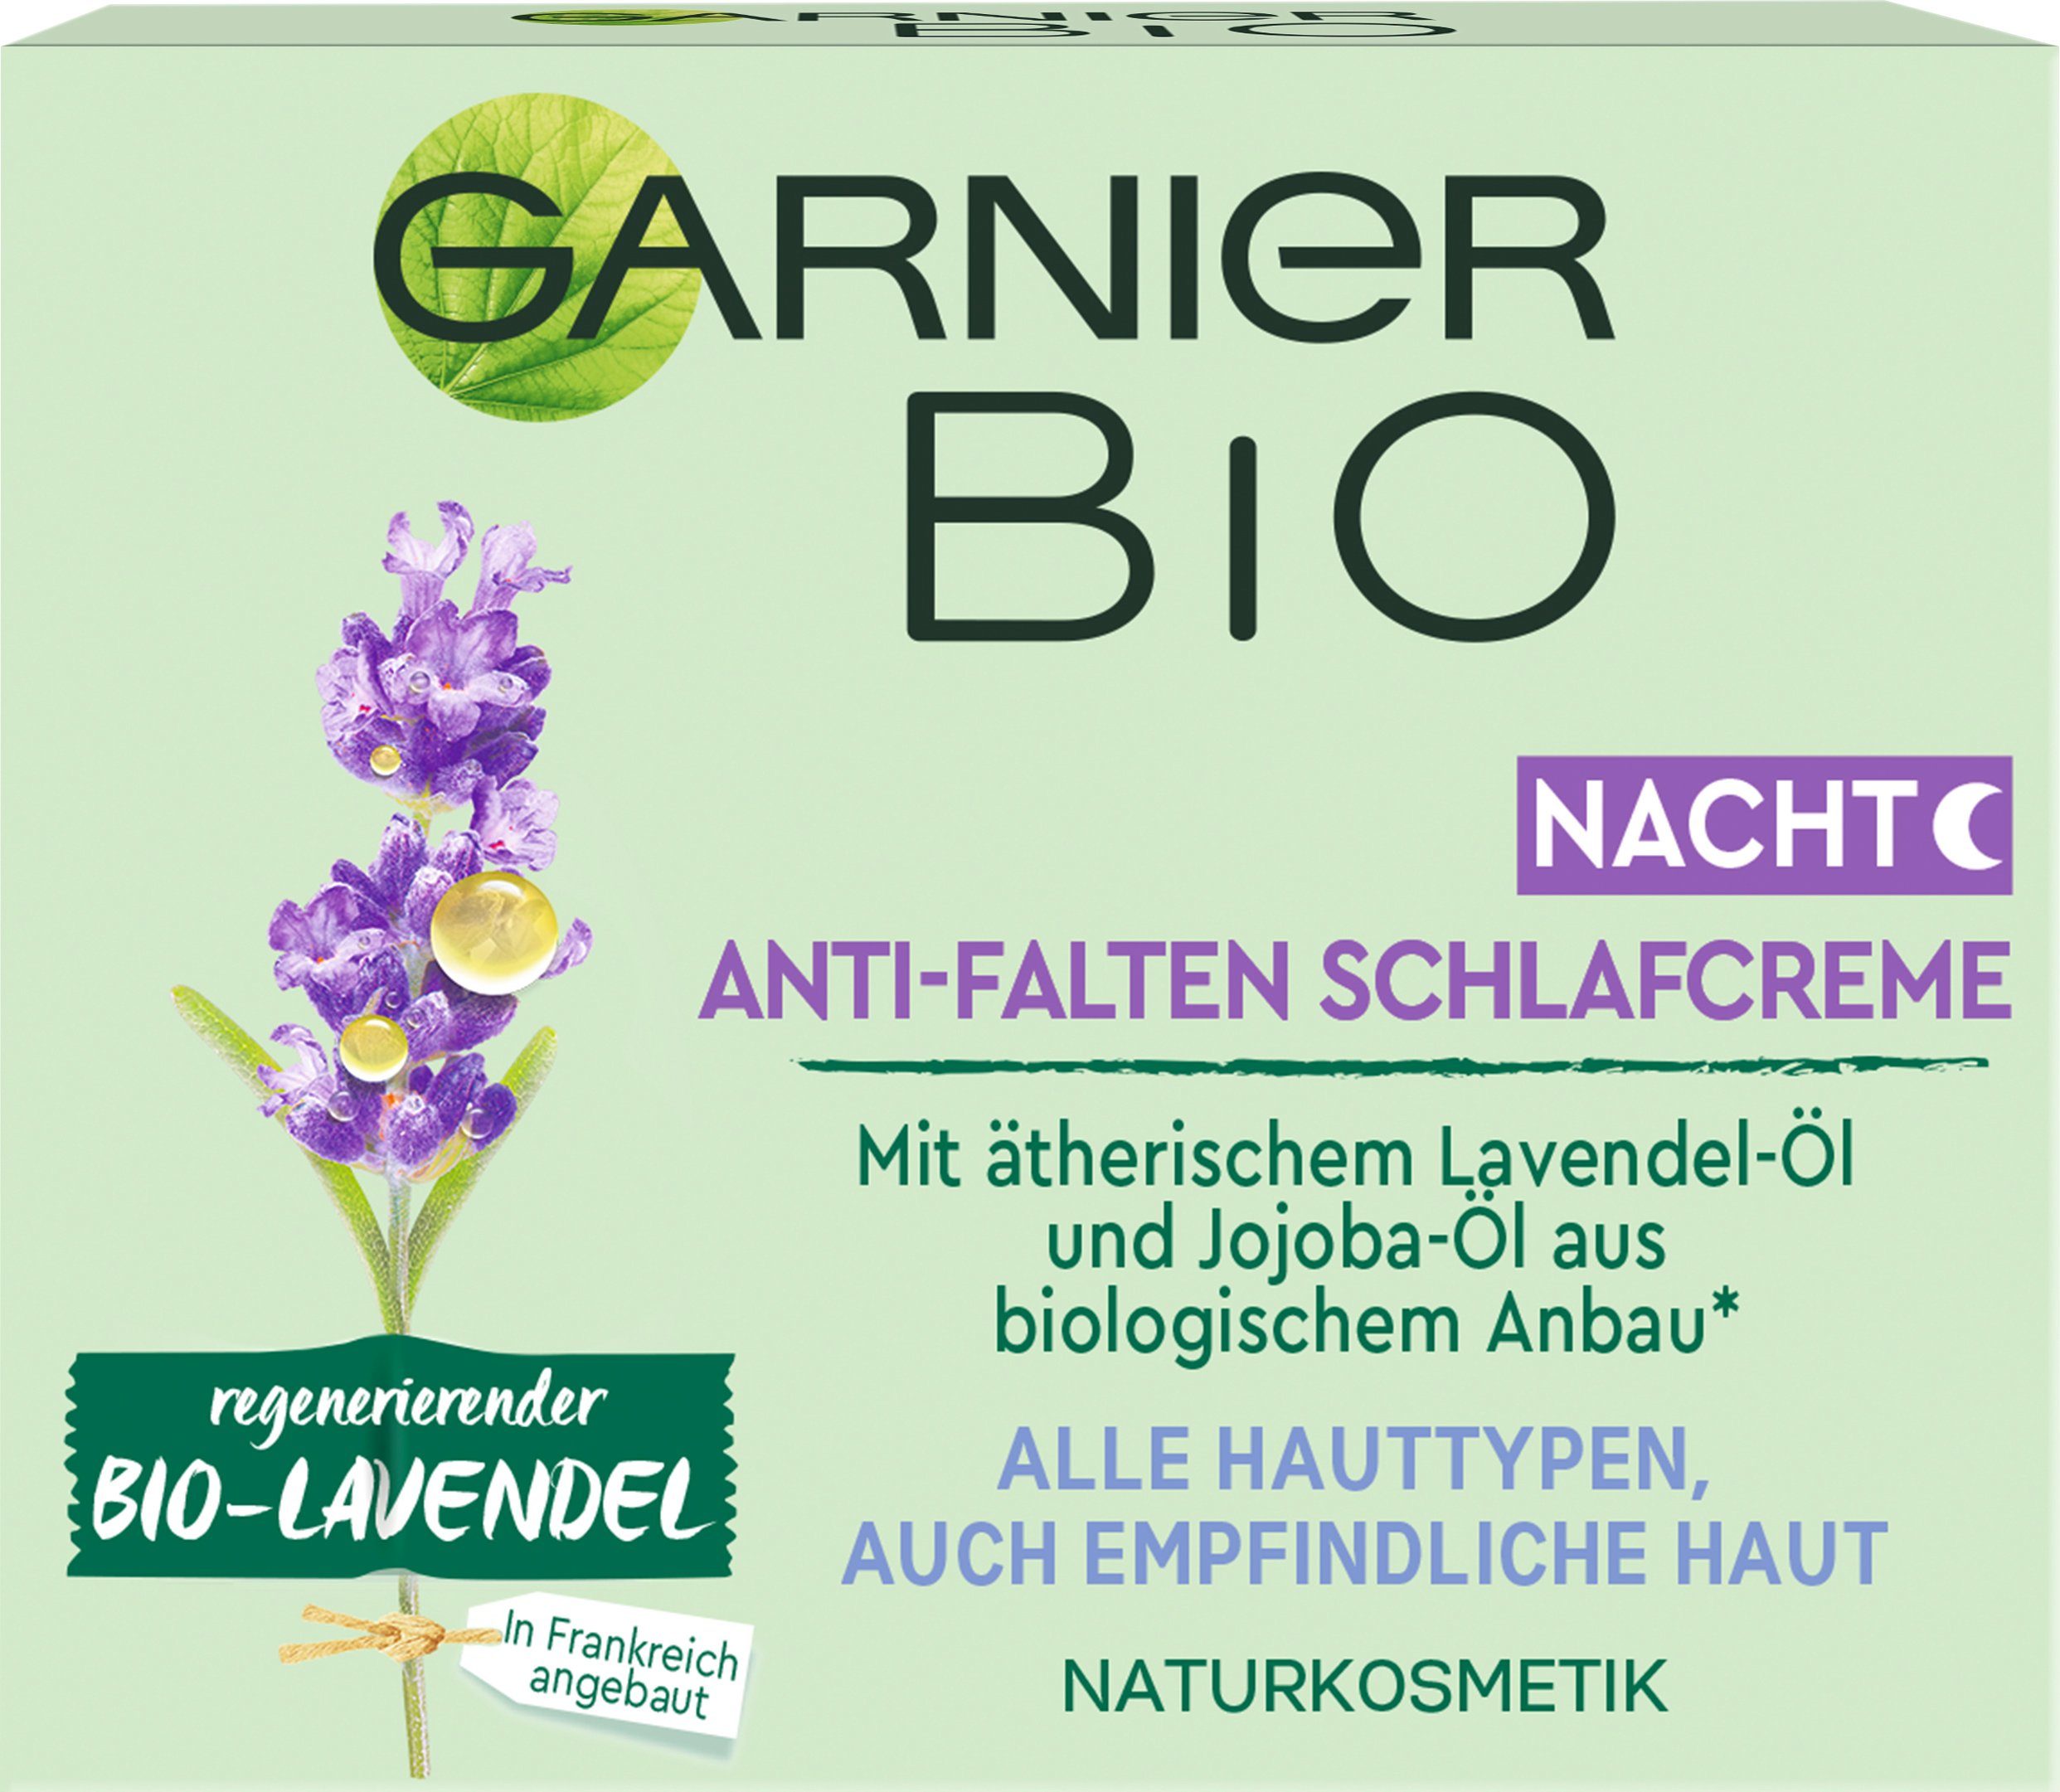 Bio-Lavendel Nachtcreme regenerierender Anti-Falten Schlafcreme GARNIER